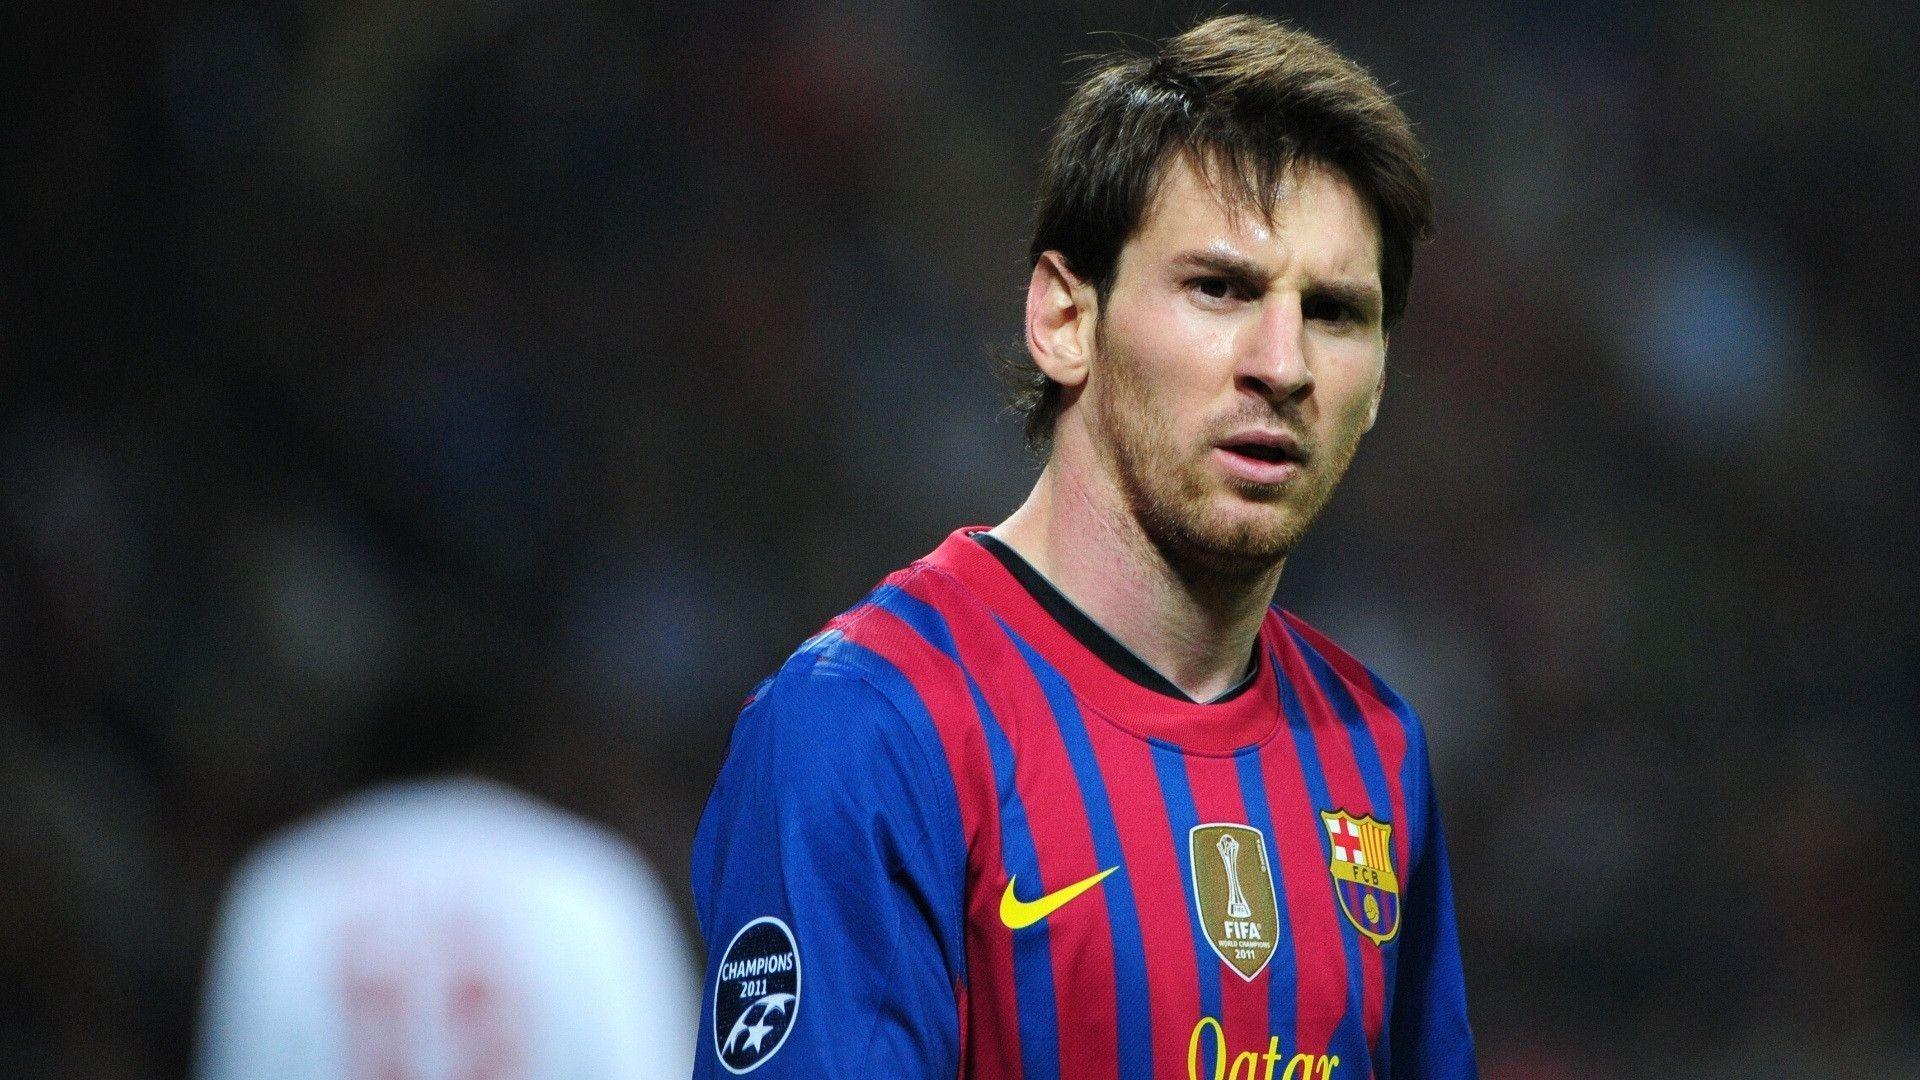 Fonds d&;écran Lionel Messi, tous les wallpaper Lionel Messi